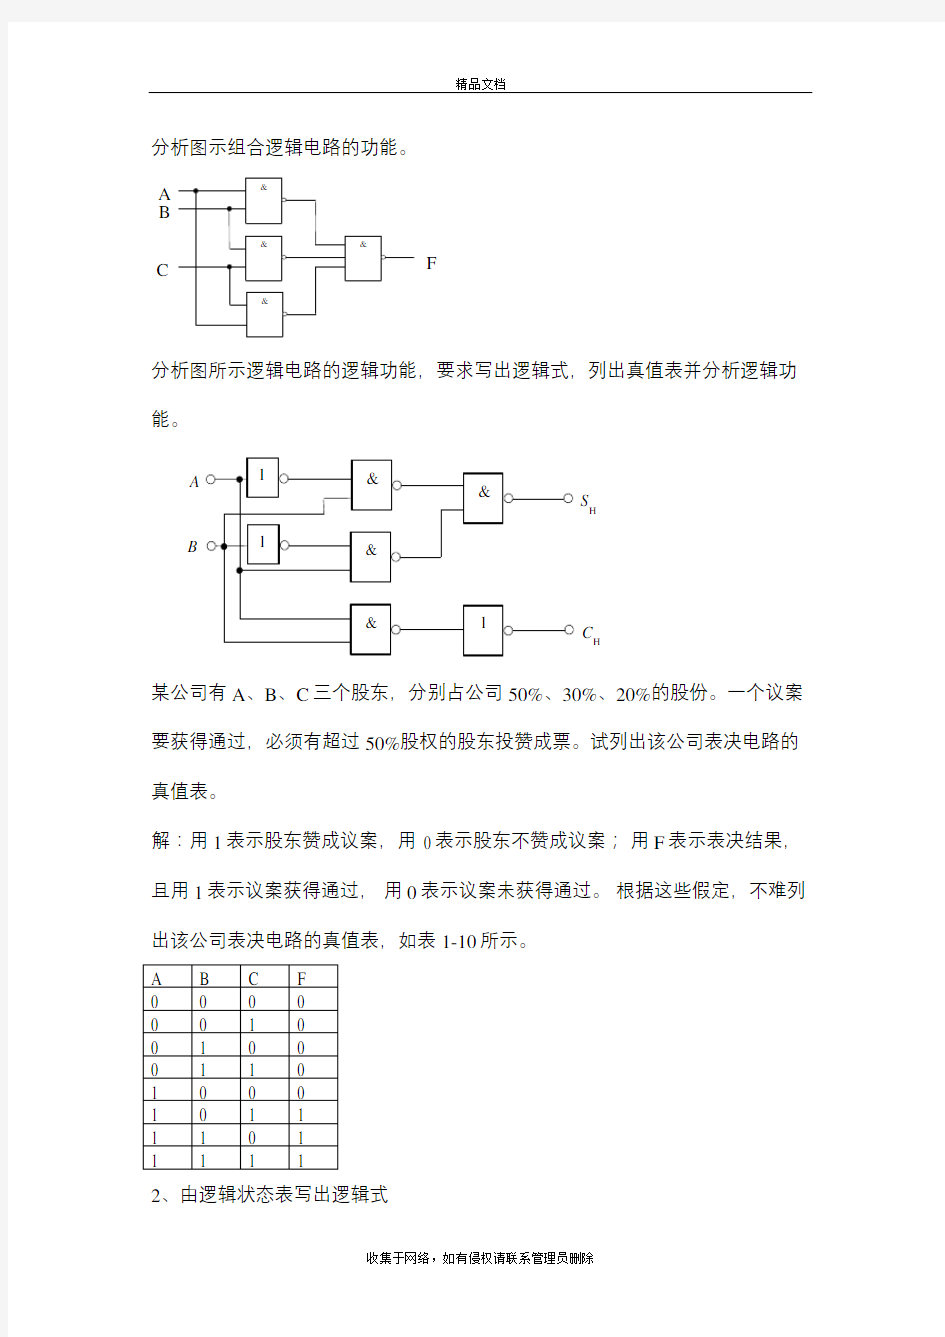 分析图示组合逻辑电路的功能教程文件